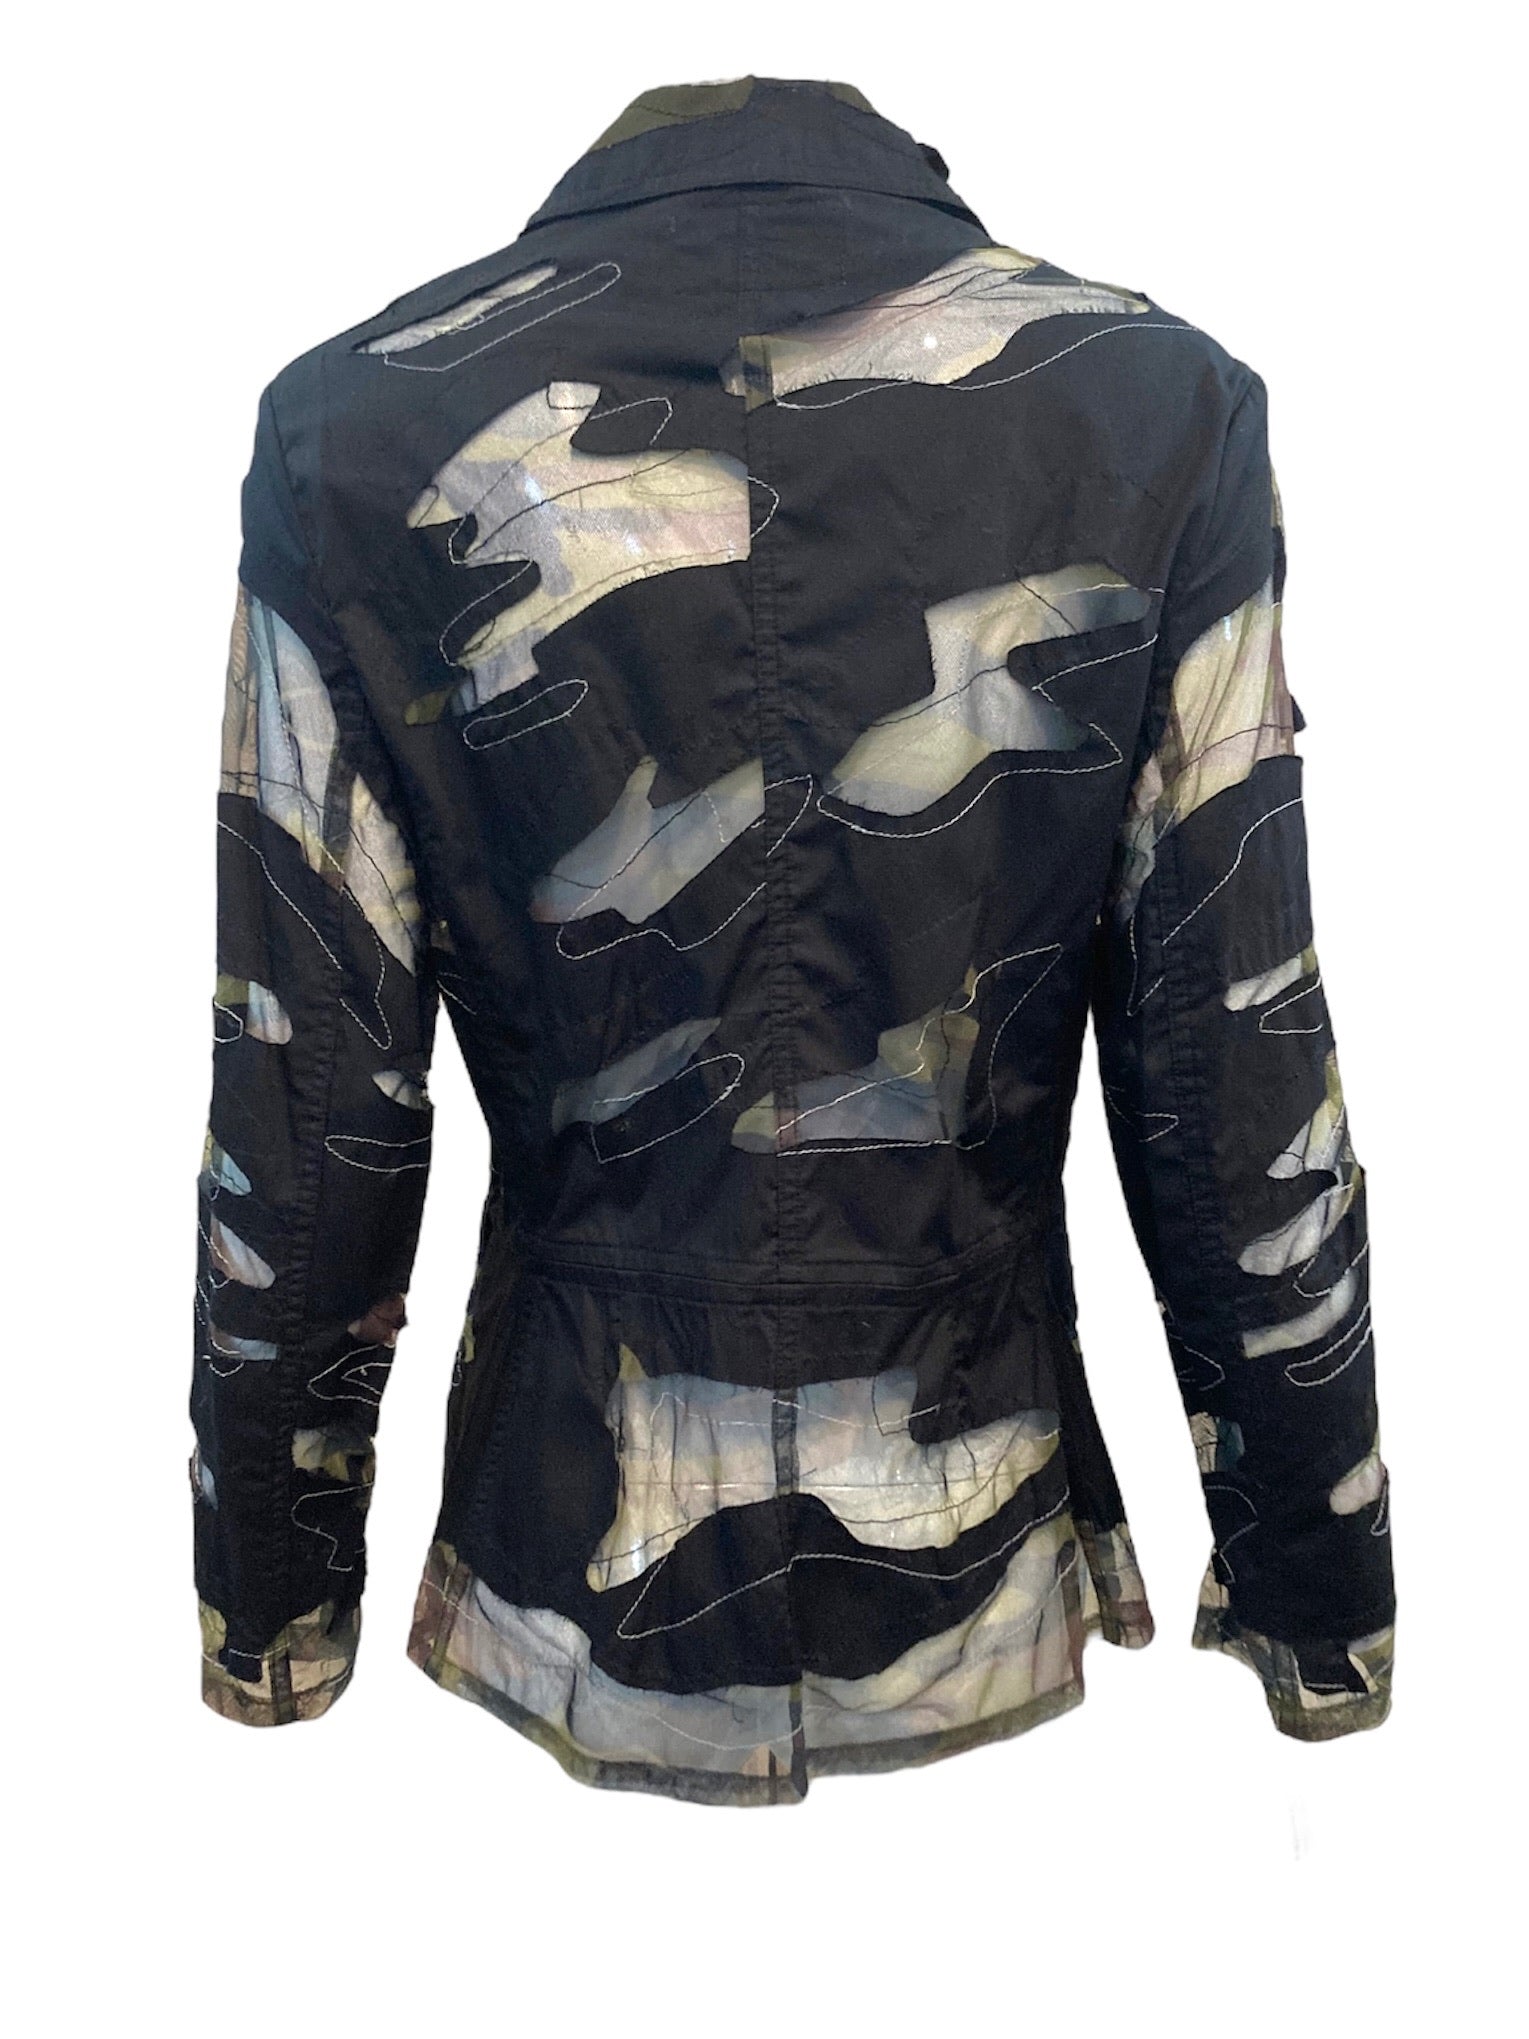 Yoshiki Hishinuma 90s Camouflage Blazer Cut Jacket BACK 3 of 5